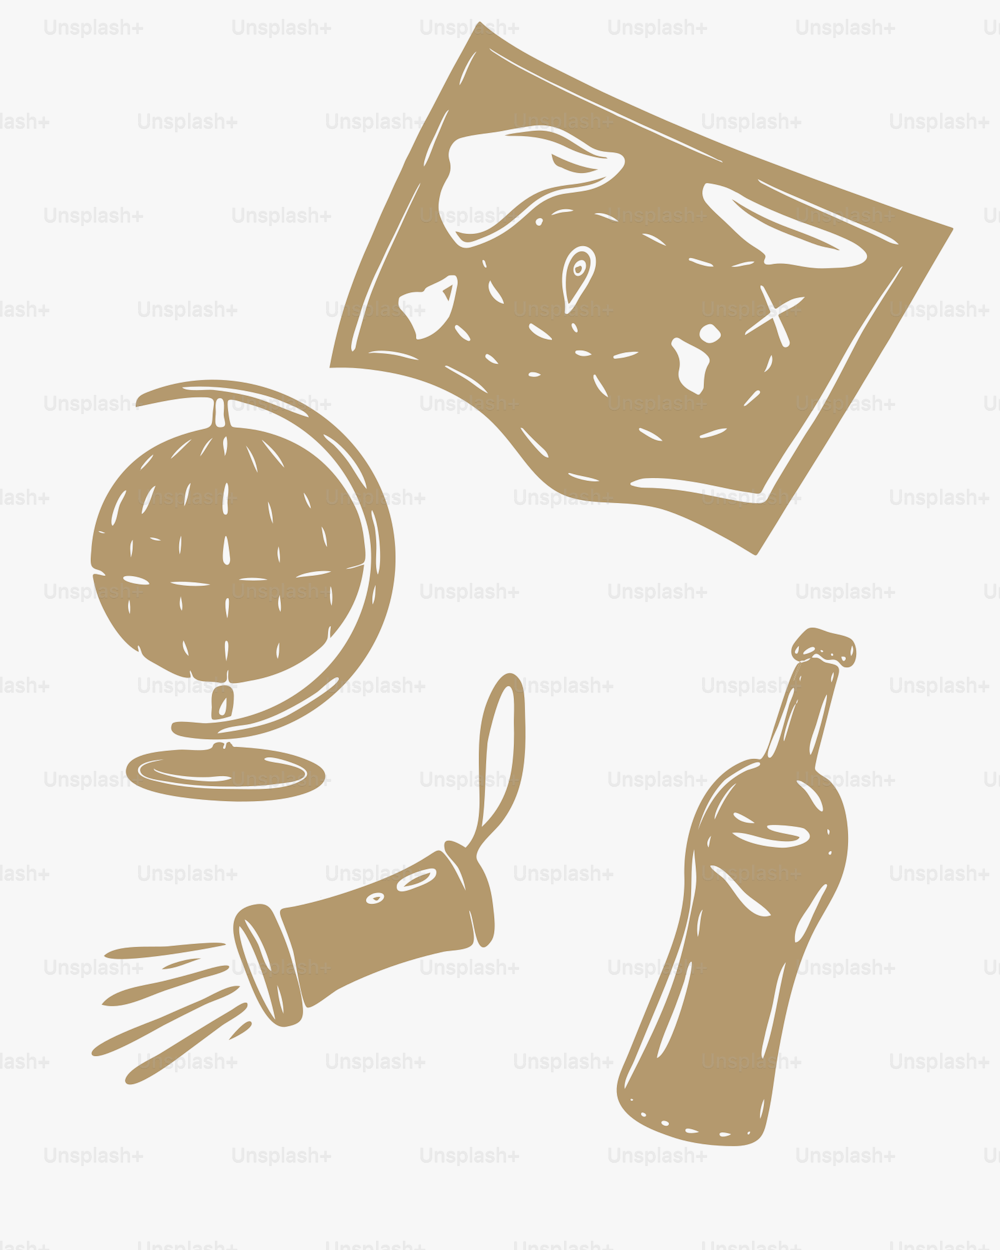 il disegno di una mappa, una bottiglia di vino e un cavatappi